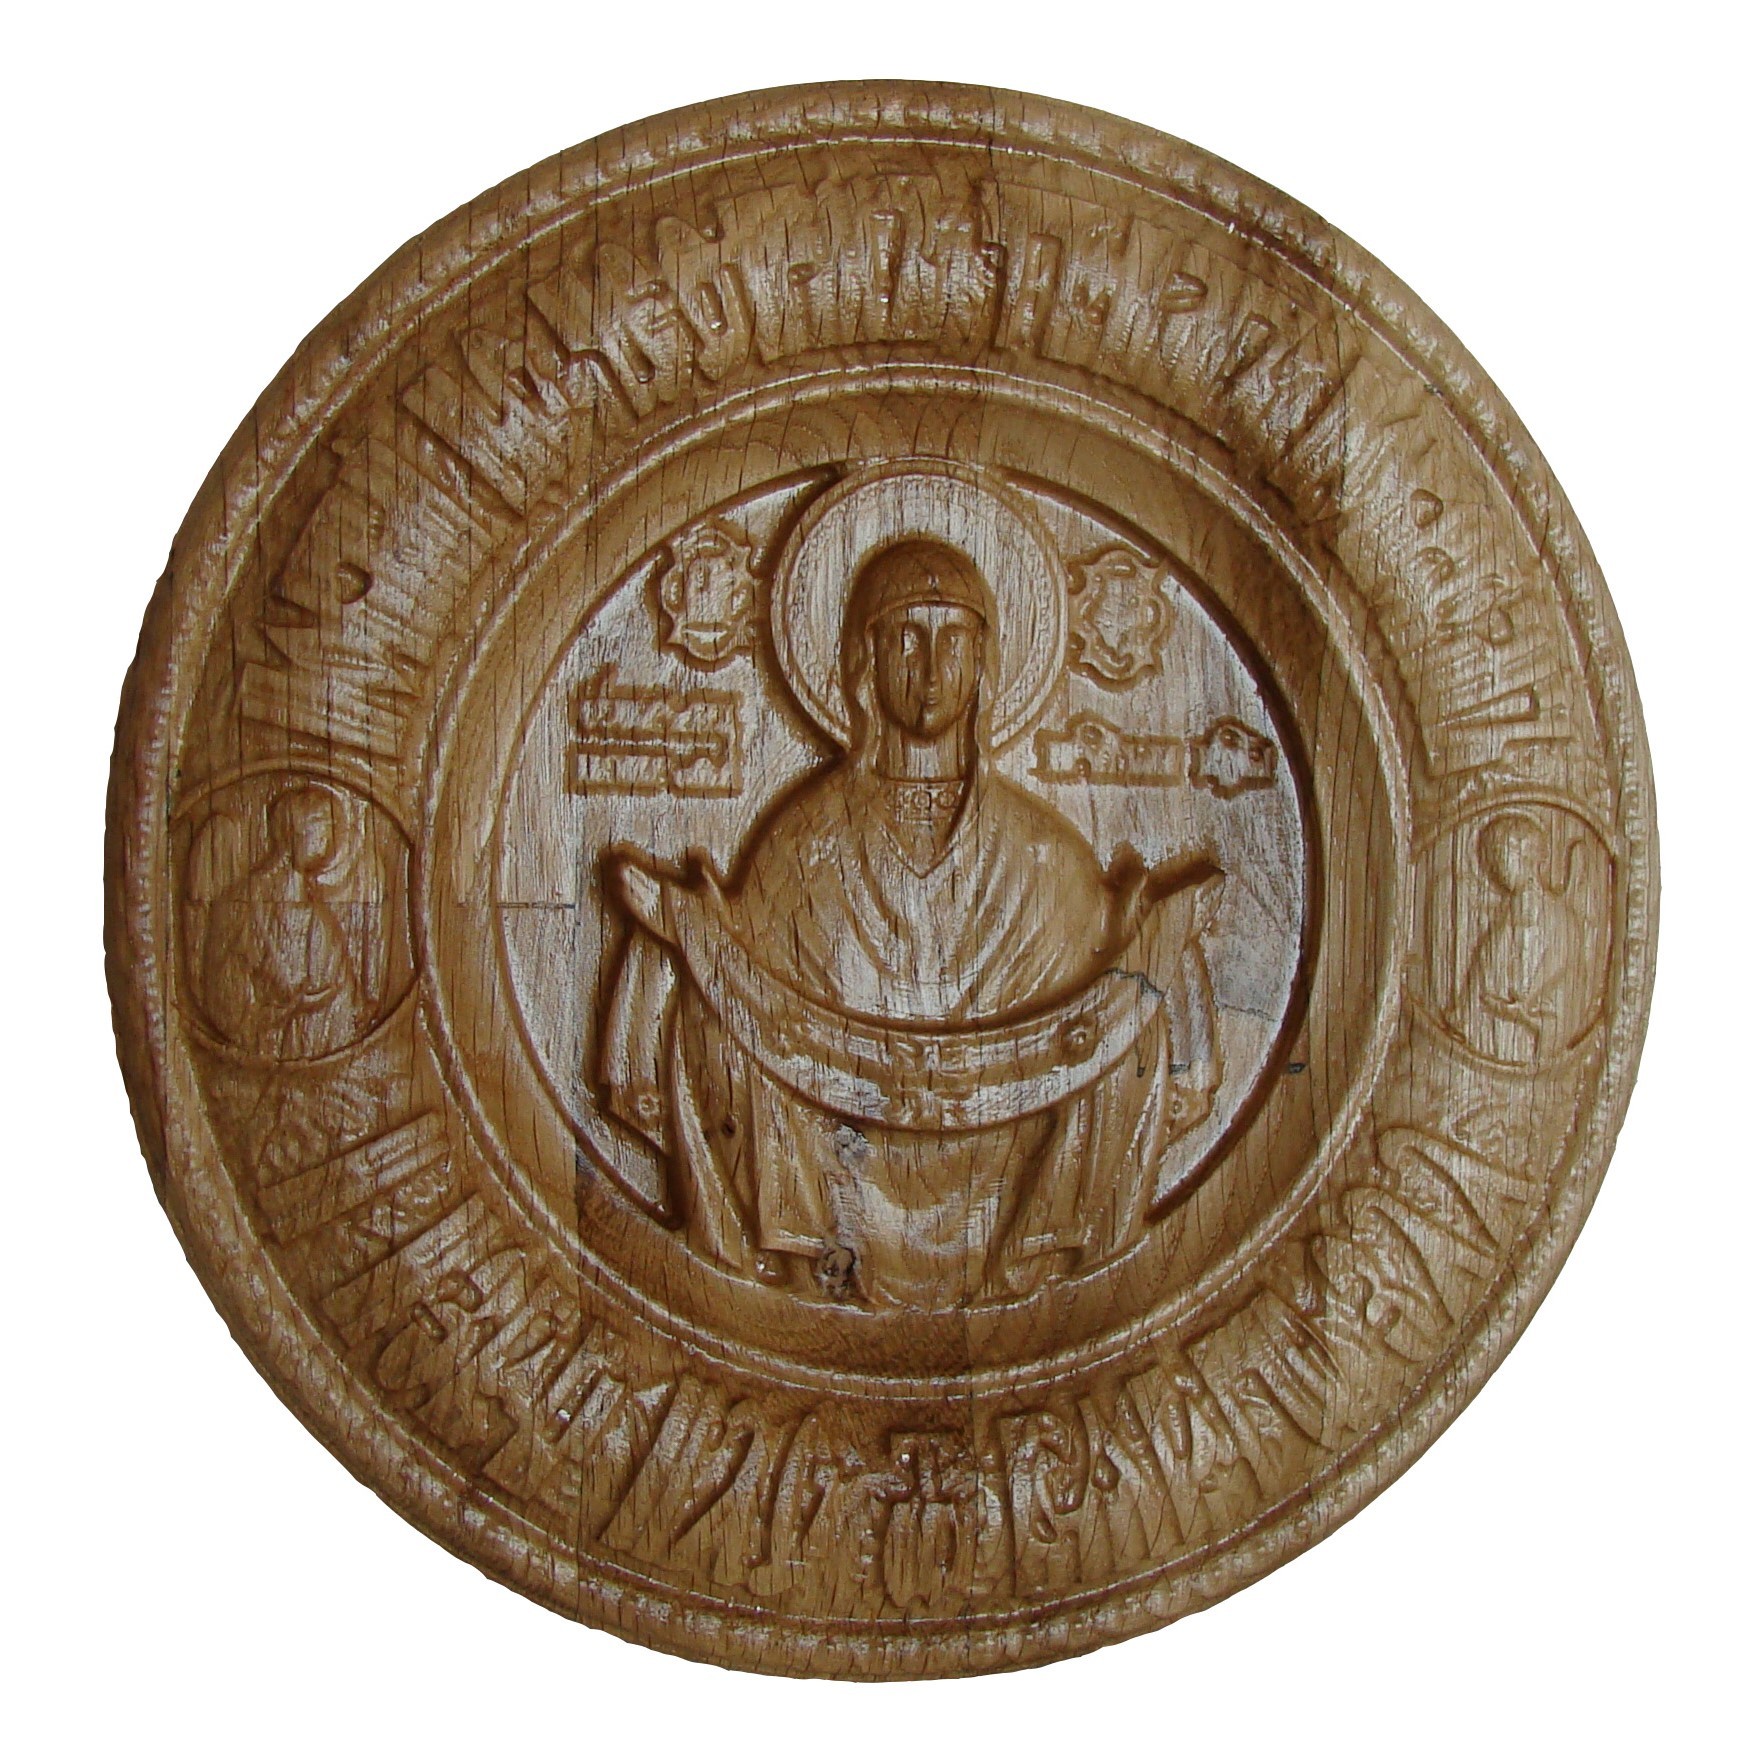 Icoana sculptata Sfantul Acoperamant, lemn masiv, diametru 17.5 cm